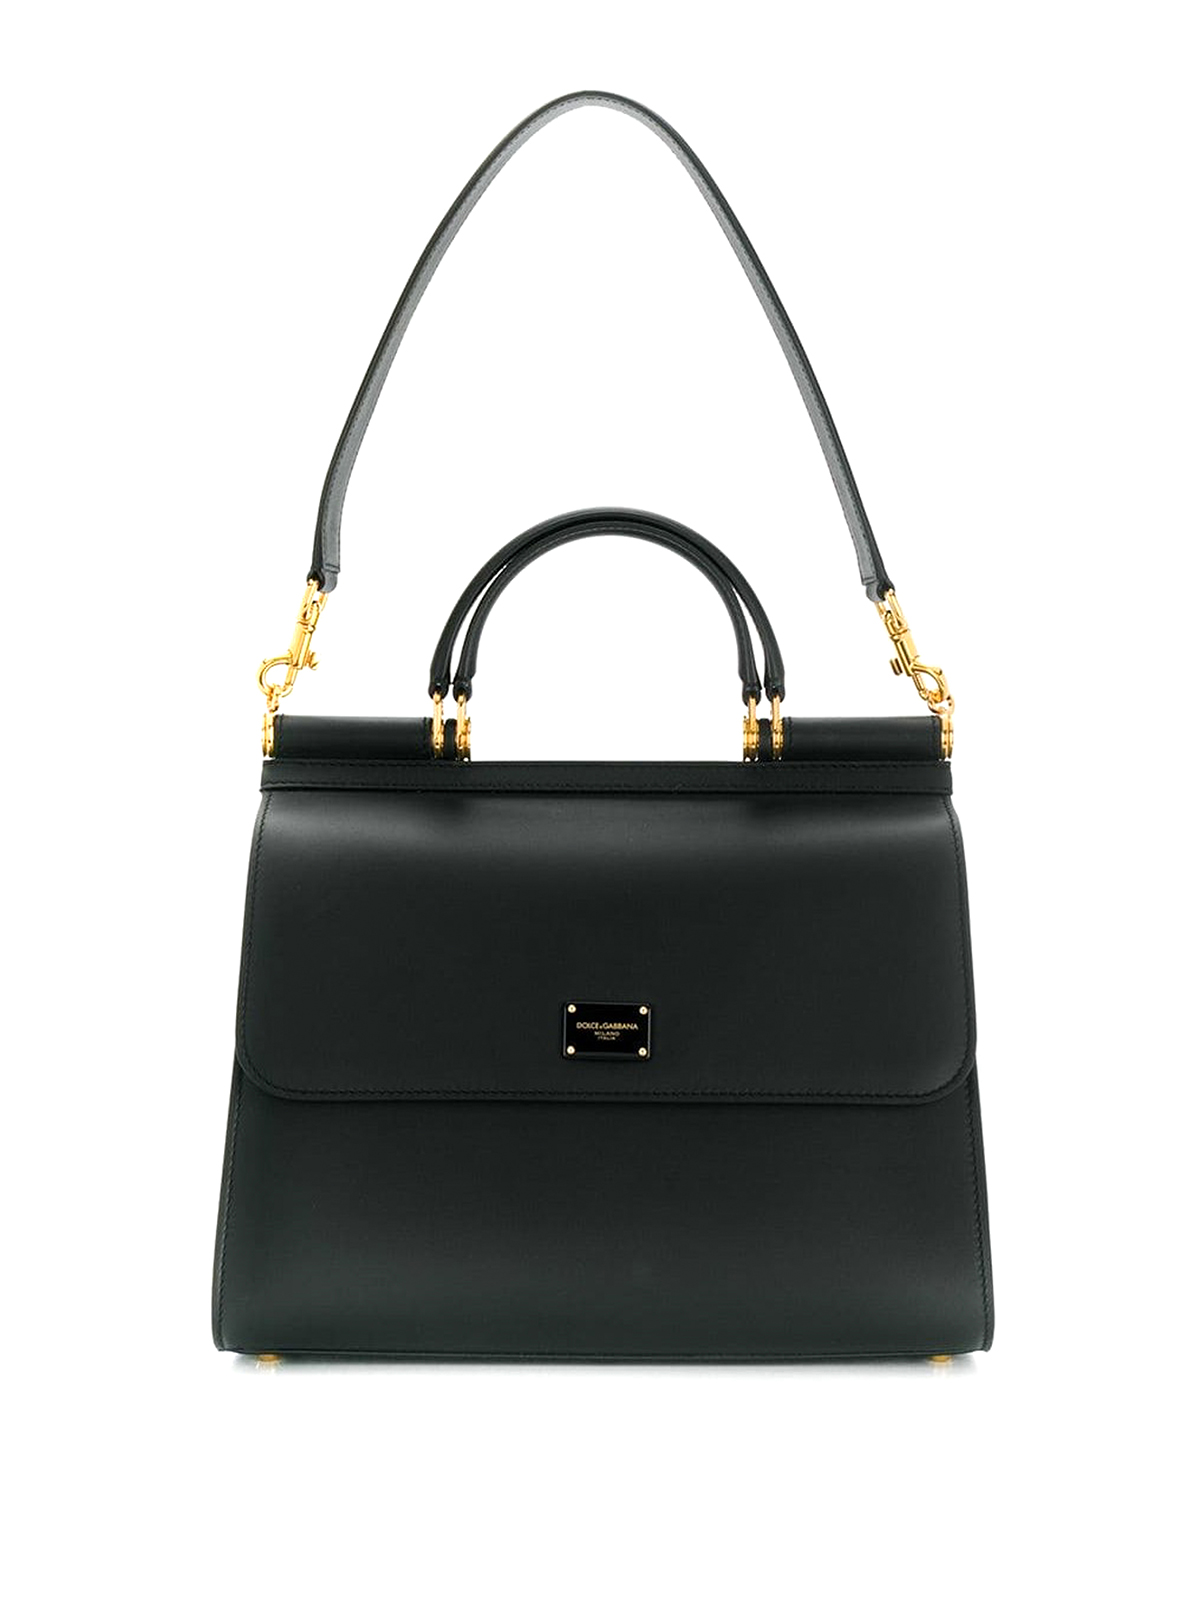 Shop Dolce & Gabbana Sicily 58 Large Leather Bag In Black